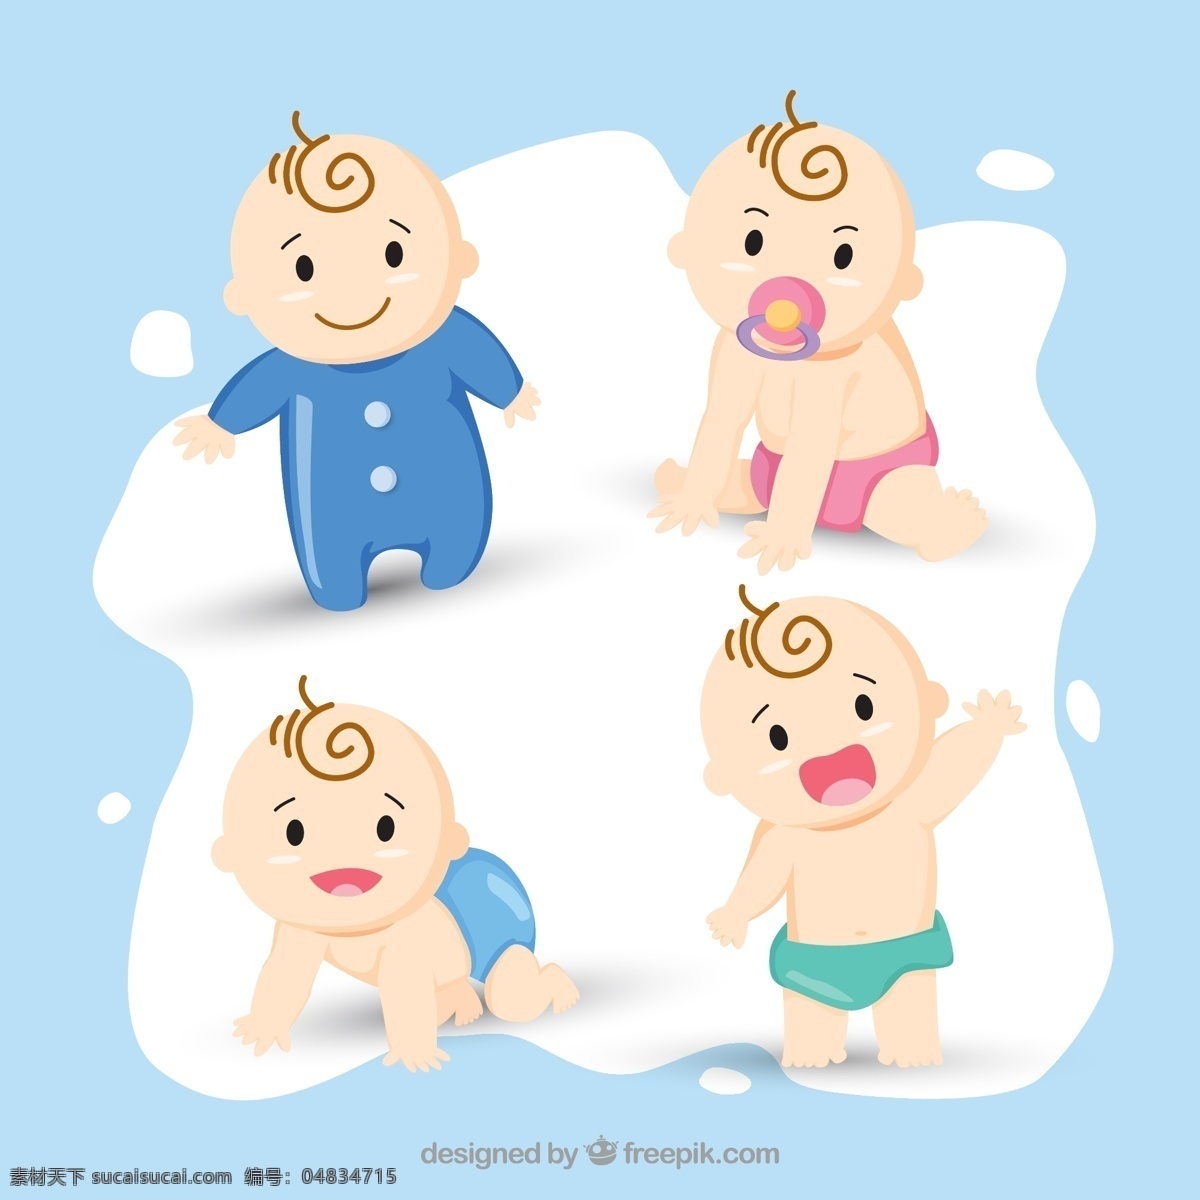 可爱的宝宝 背景 宝贝 沐浴 卡通 快乐 可爱 儿童 庆典 婴儿 插图 淋浴 客厅 美丽的 尿布 收集 微笑 蹒跚学步 性格开朗 小